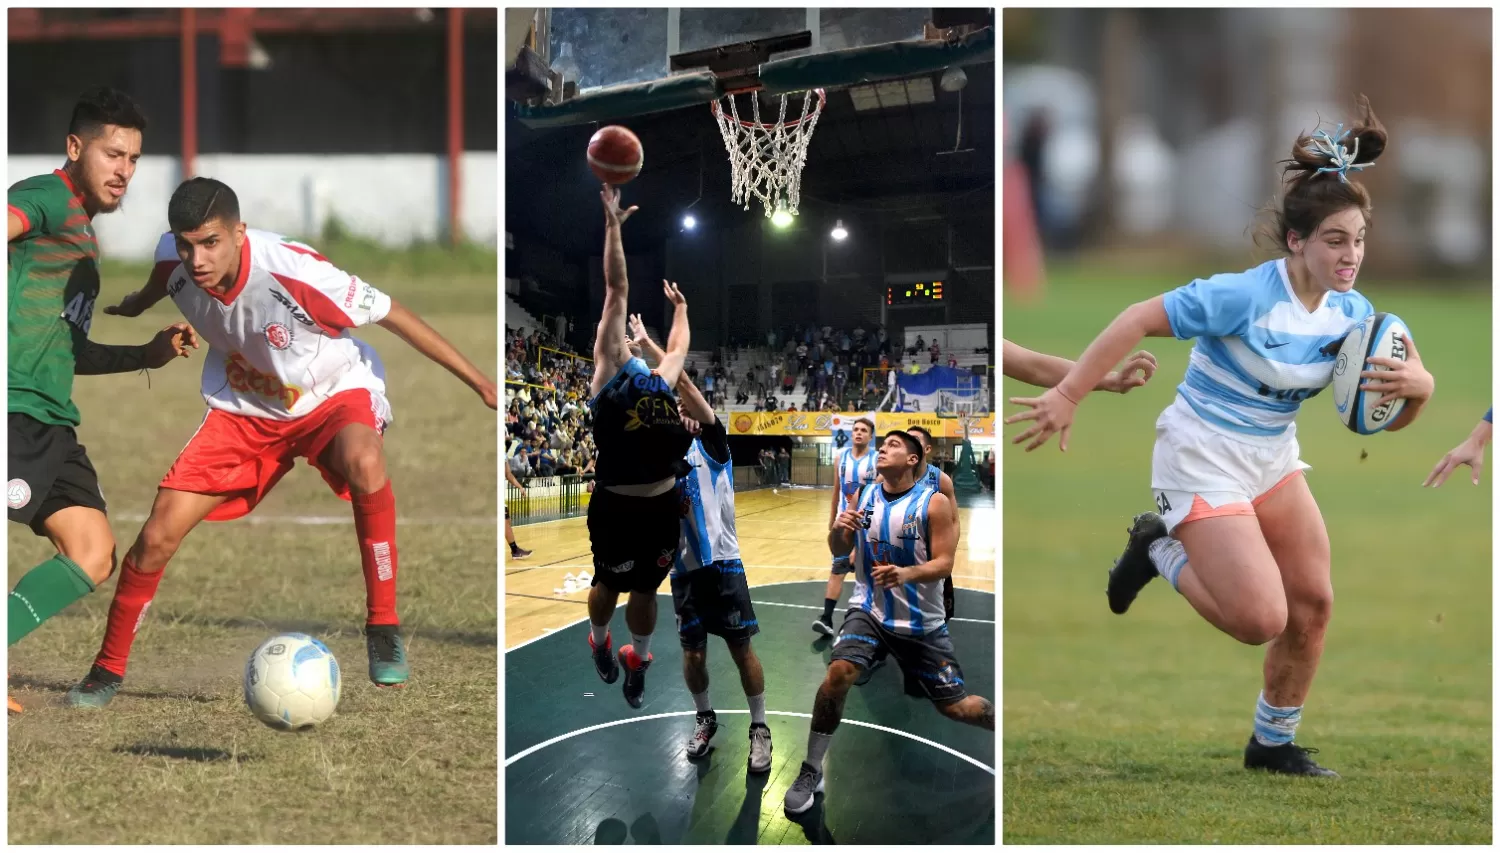 Sondeo LA GACETA: después del fútbol, ¿cuál es el deporte más popular en Tucumán?